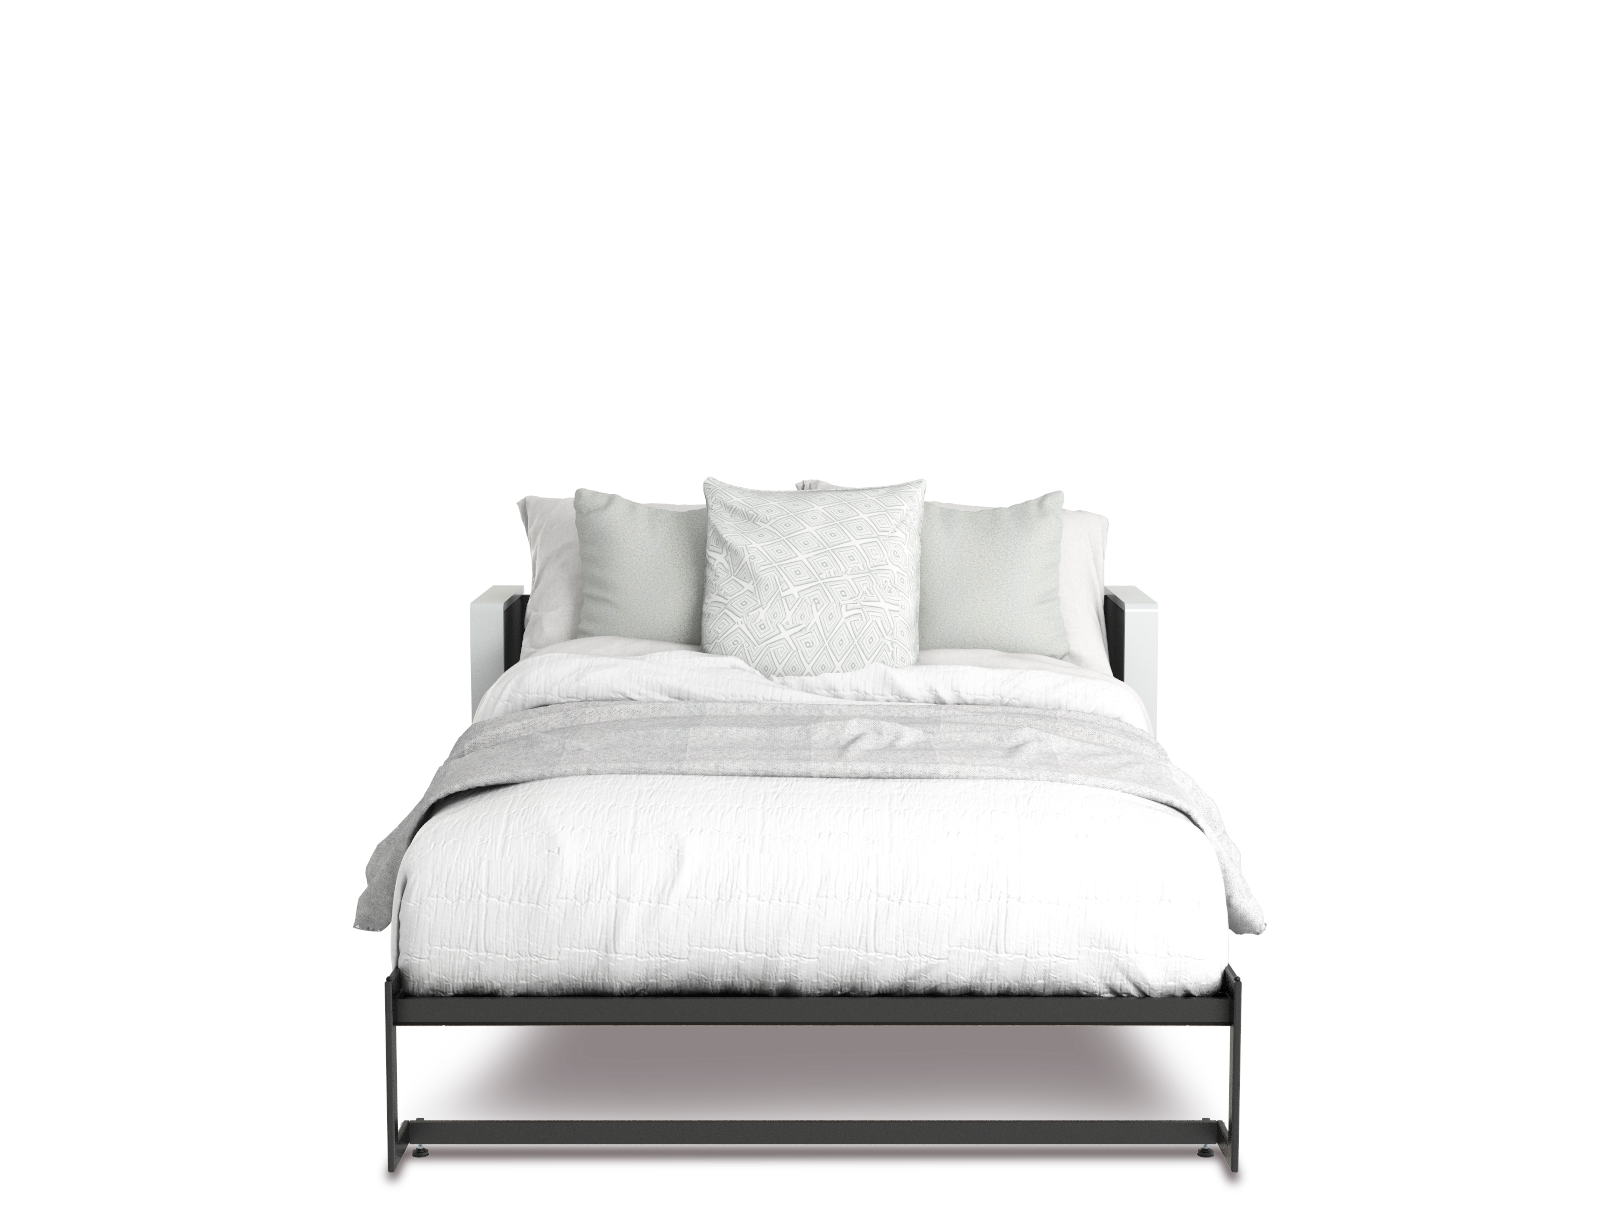 Esentelle base de cama queen size con laminado de madera color blanca // MS